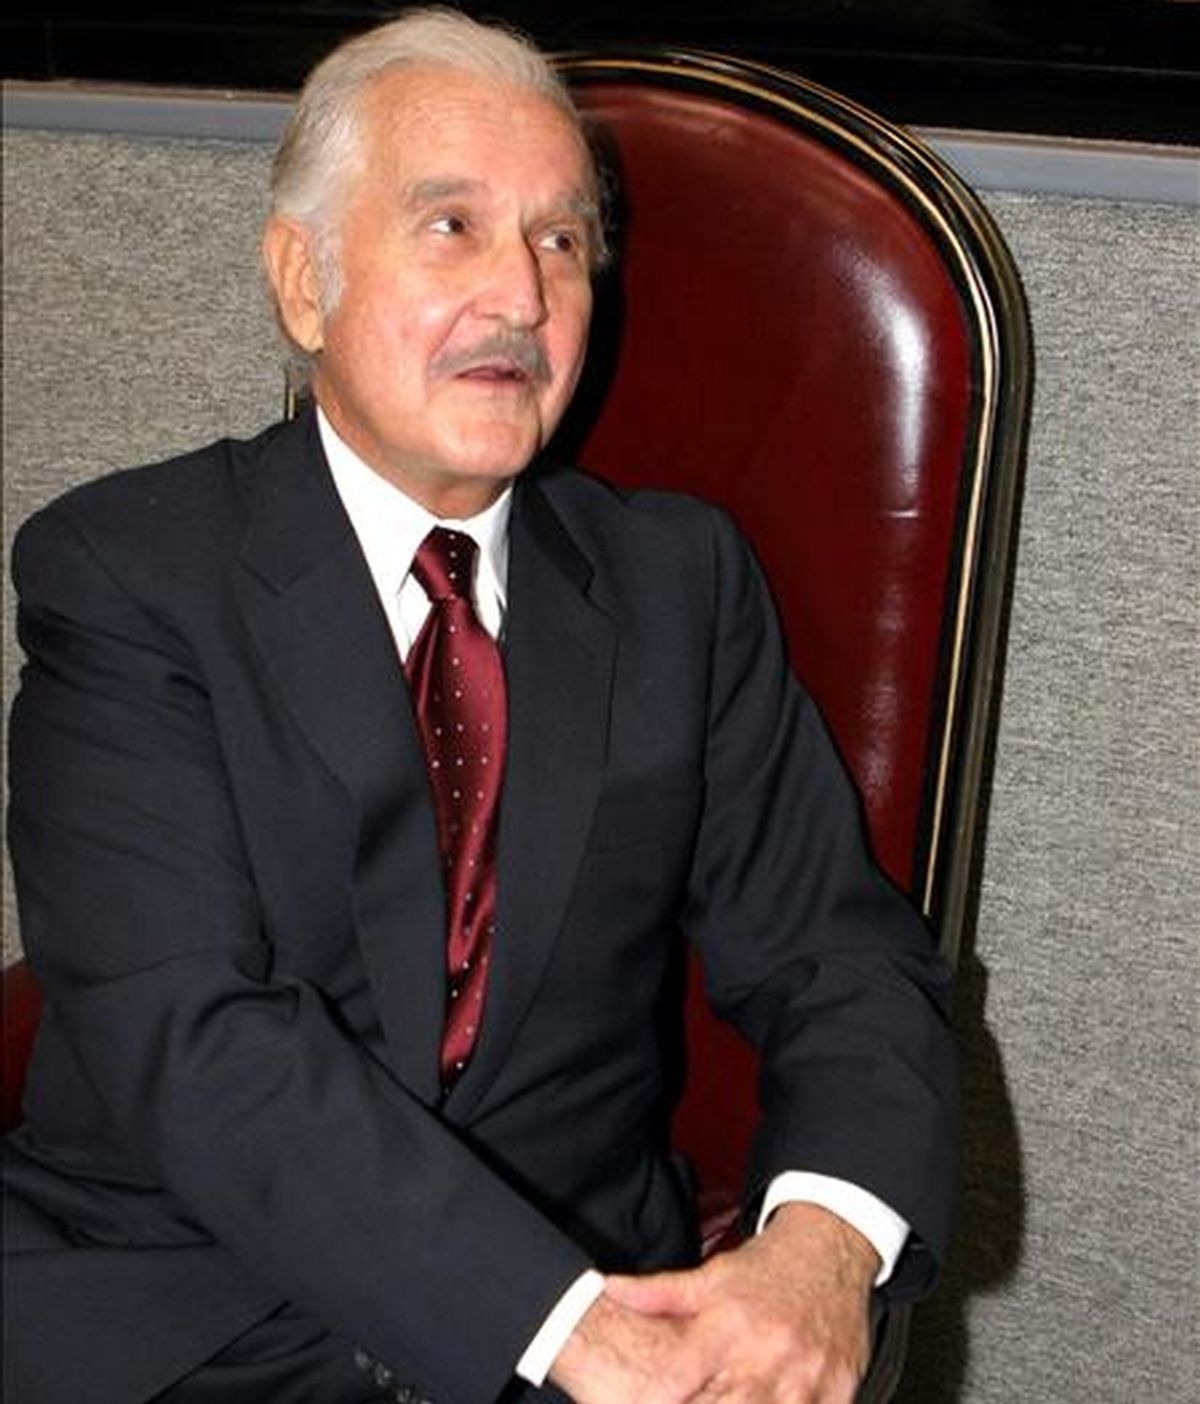 El escritor mexicano Carlos Fuentes ha ganado la XXXIV edición del Premio González-Ruano de Periodismo, que concede el Instituto de Cultura de la Fundación Mapfre, por su artículo "El Yucatán de Lara Zavala", publicado en el diario Reforma de México el 7 de abril de 2008. EFE/Archivo